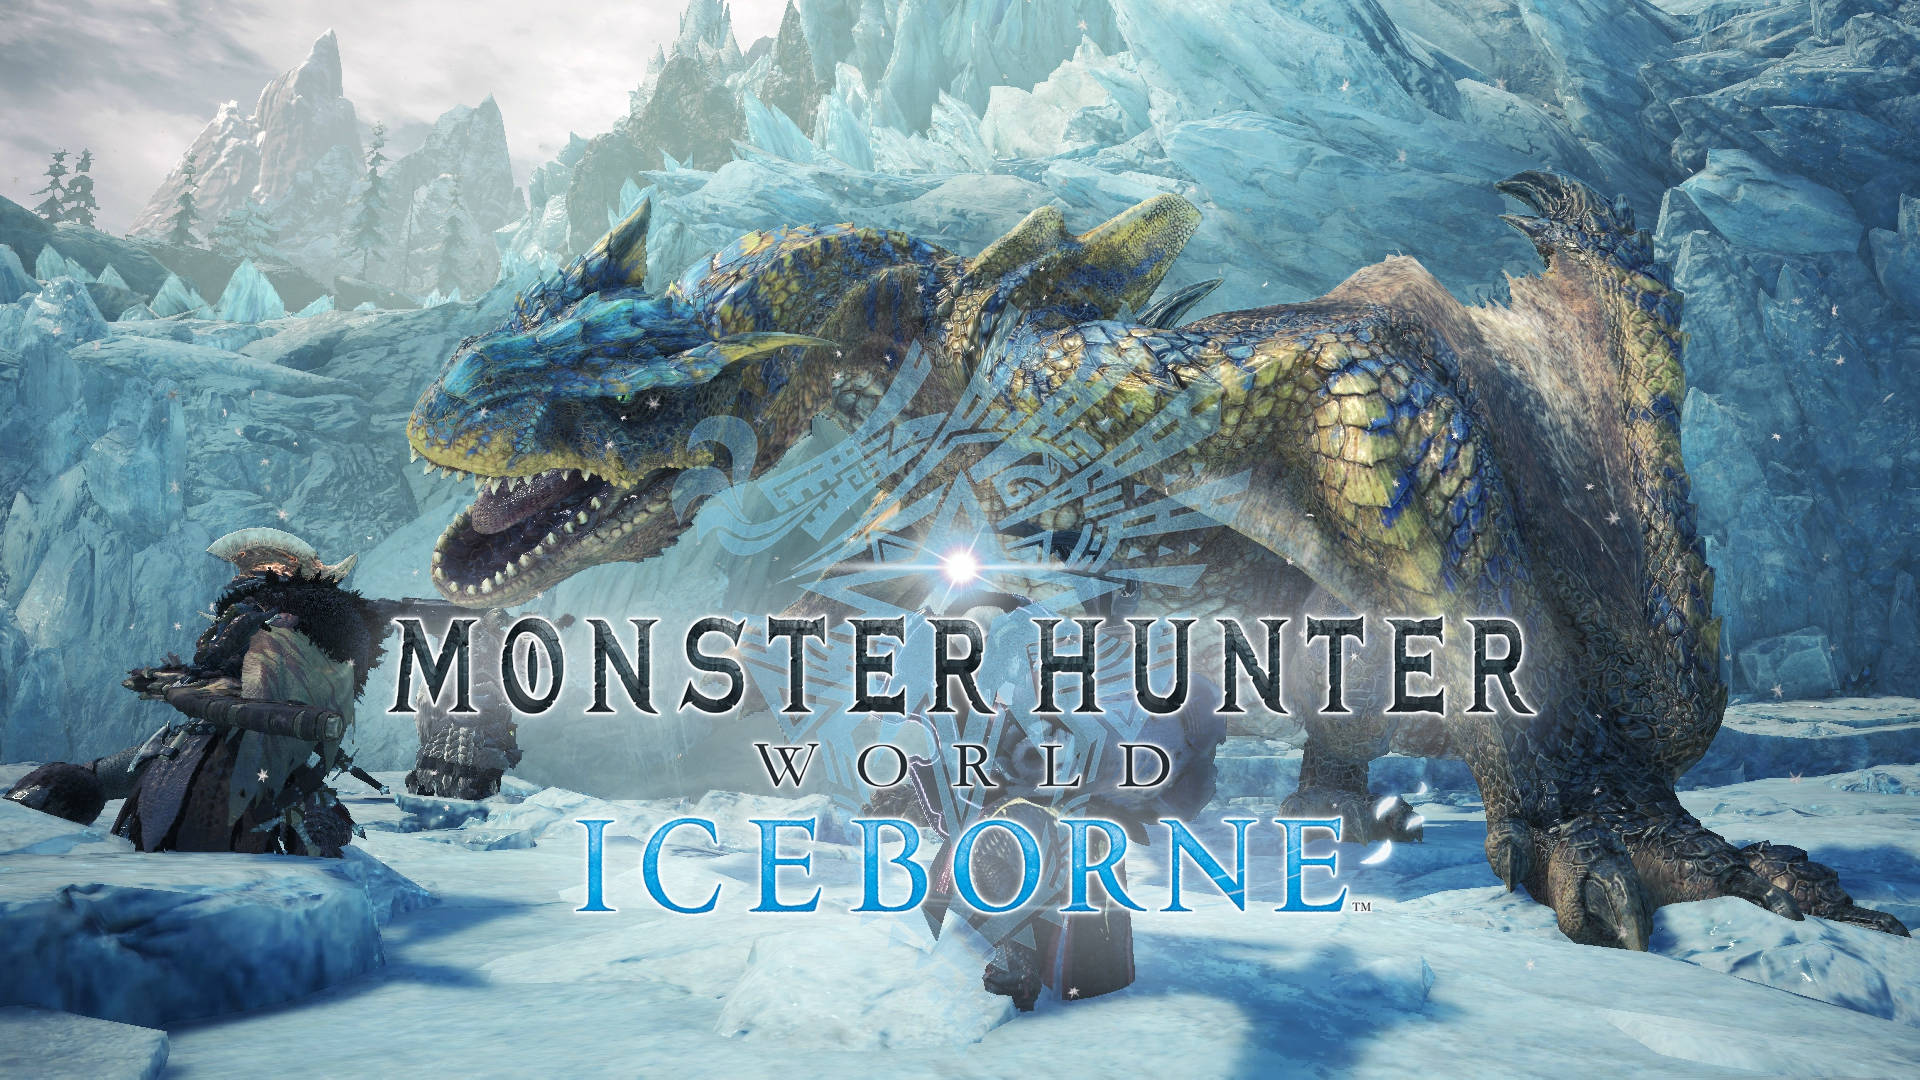 Monsterhunter World Iceborne Affisch Med Tigrex Wallpaper